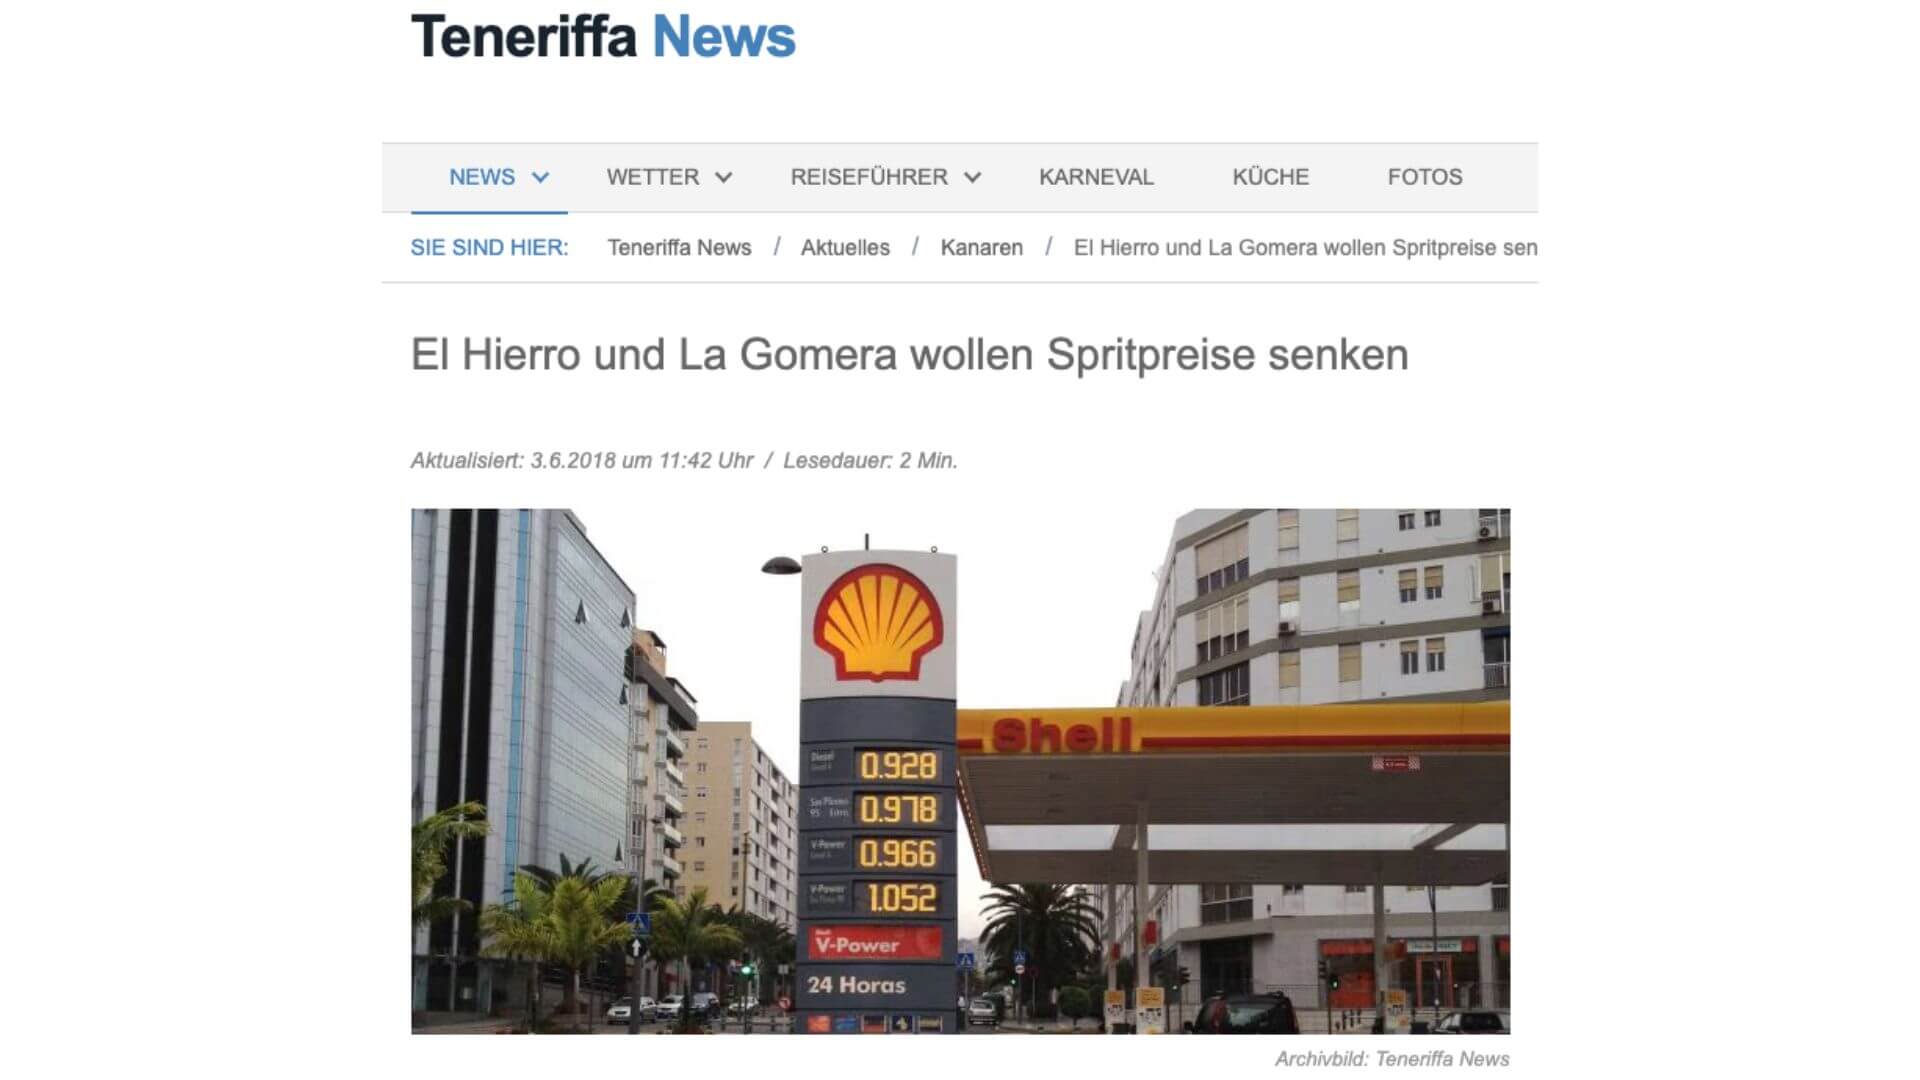 Die Webseite Teneriffa News nutzte das Foto für einen Artikel 2018 und markierte ihn damals schon als „Archivbild“